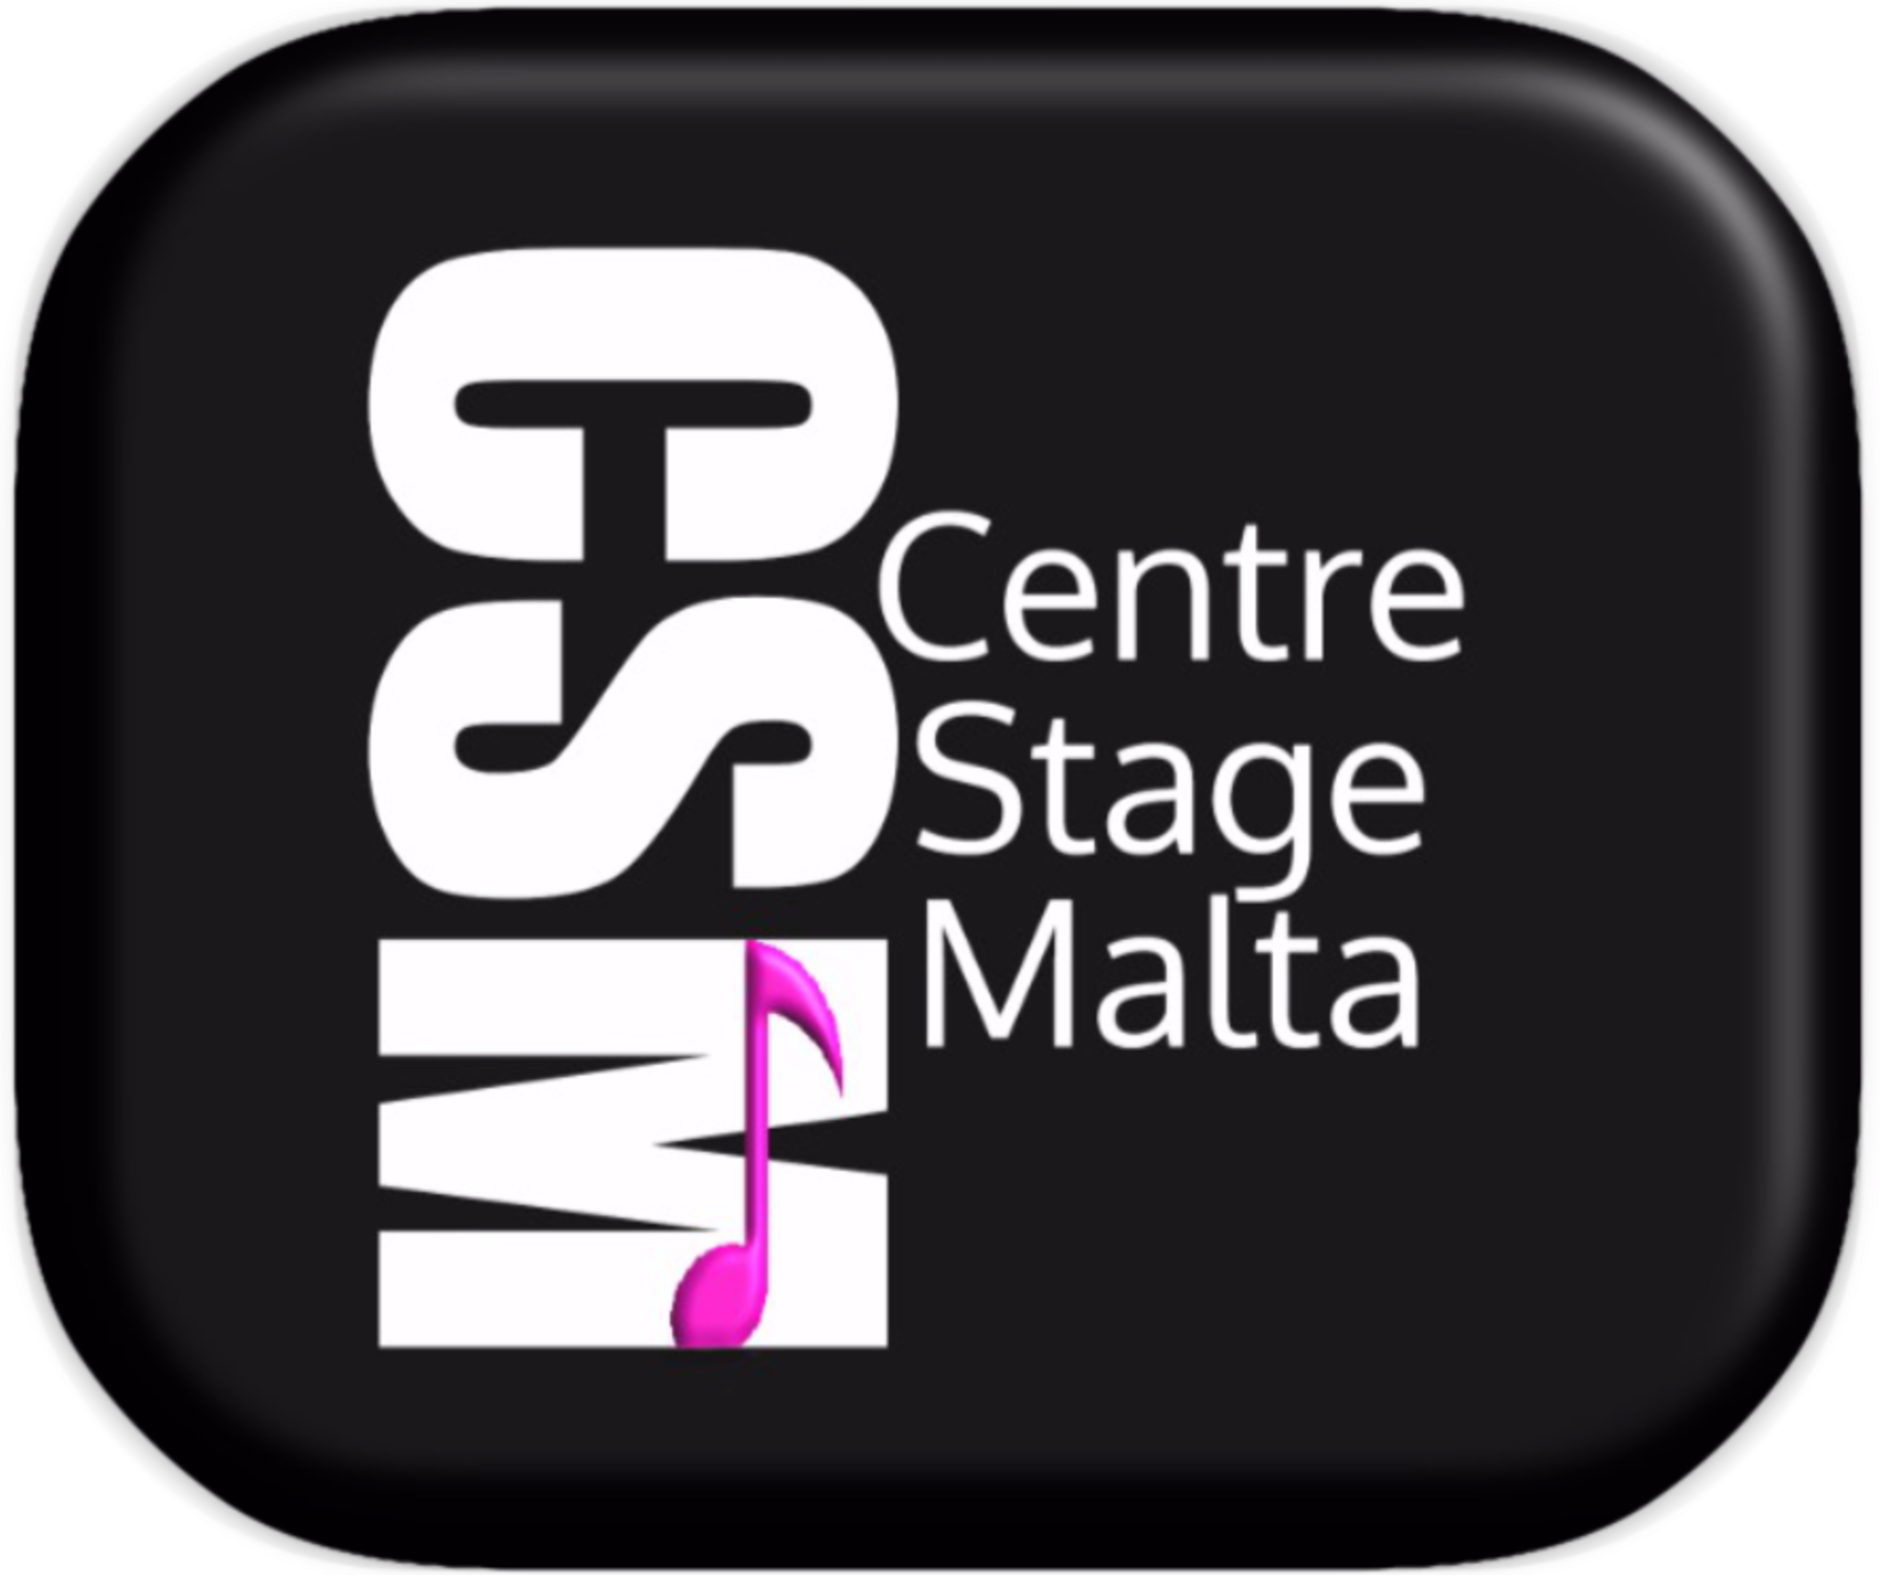 Centrestage Malta
Triq il-Gvern Lokali